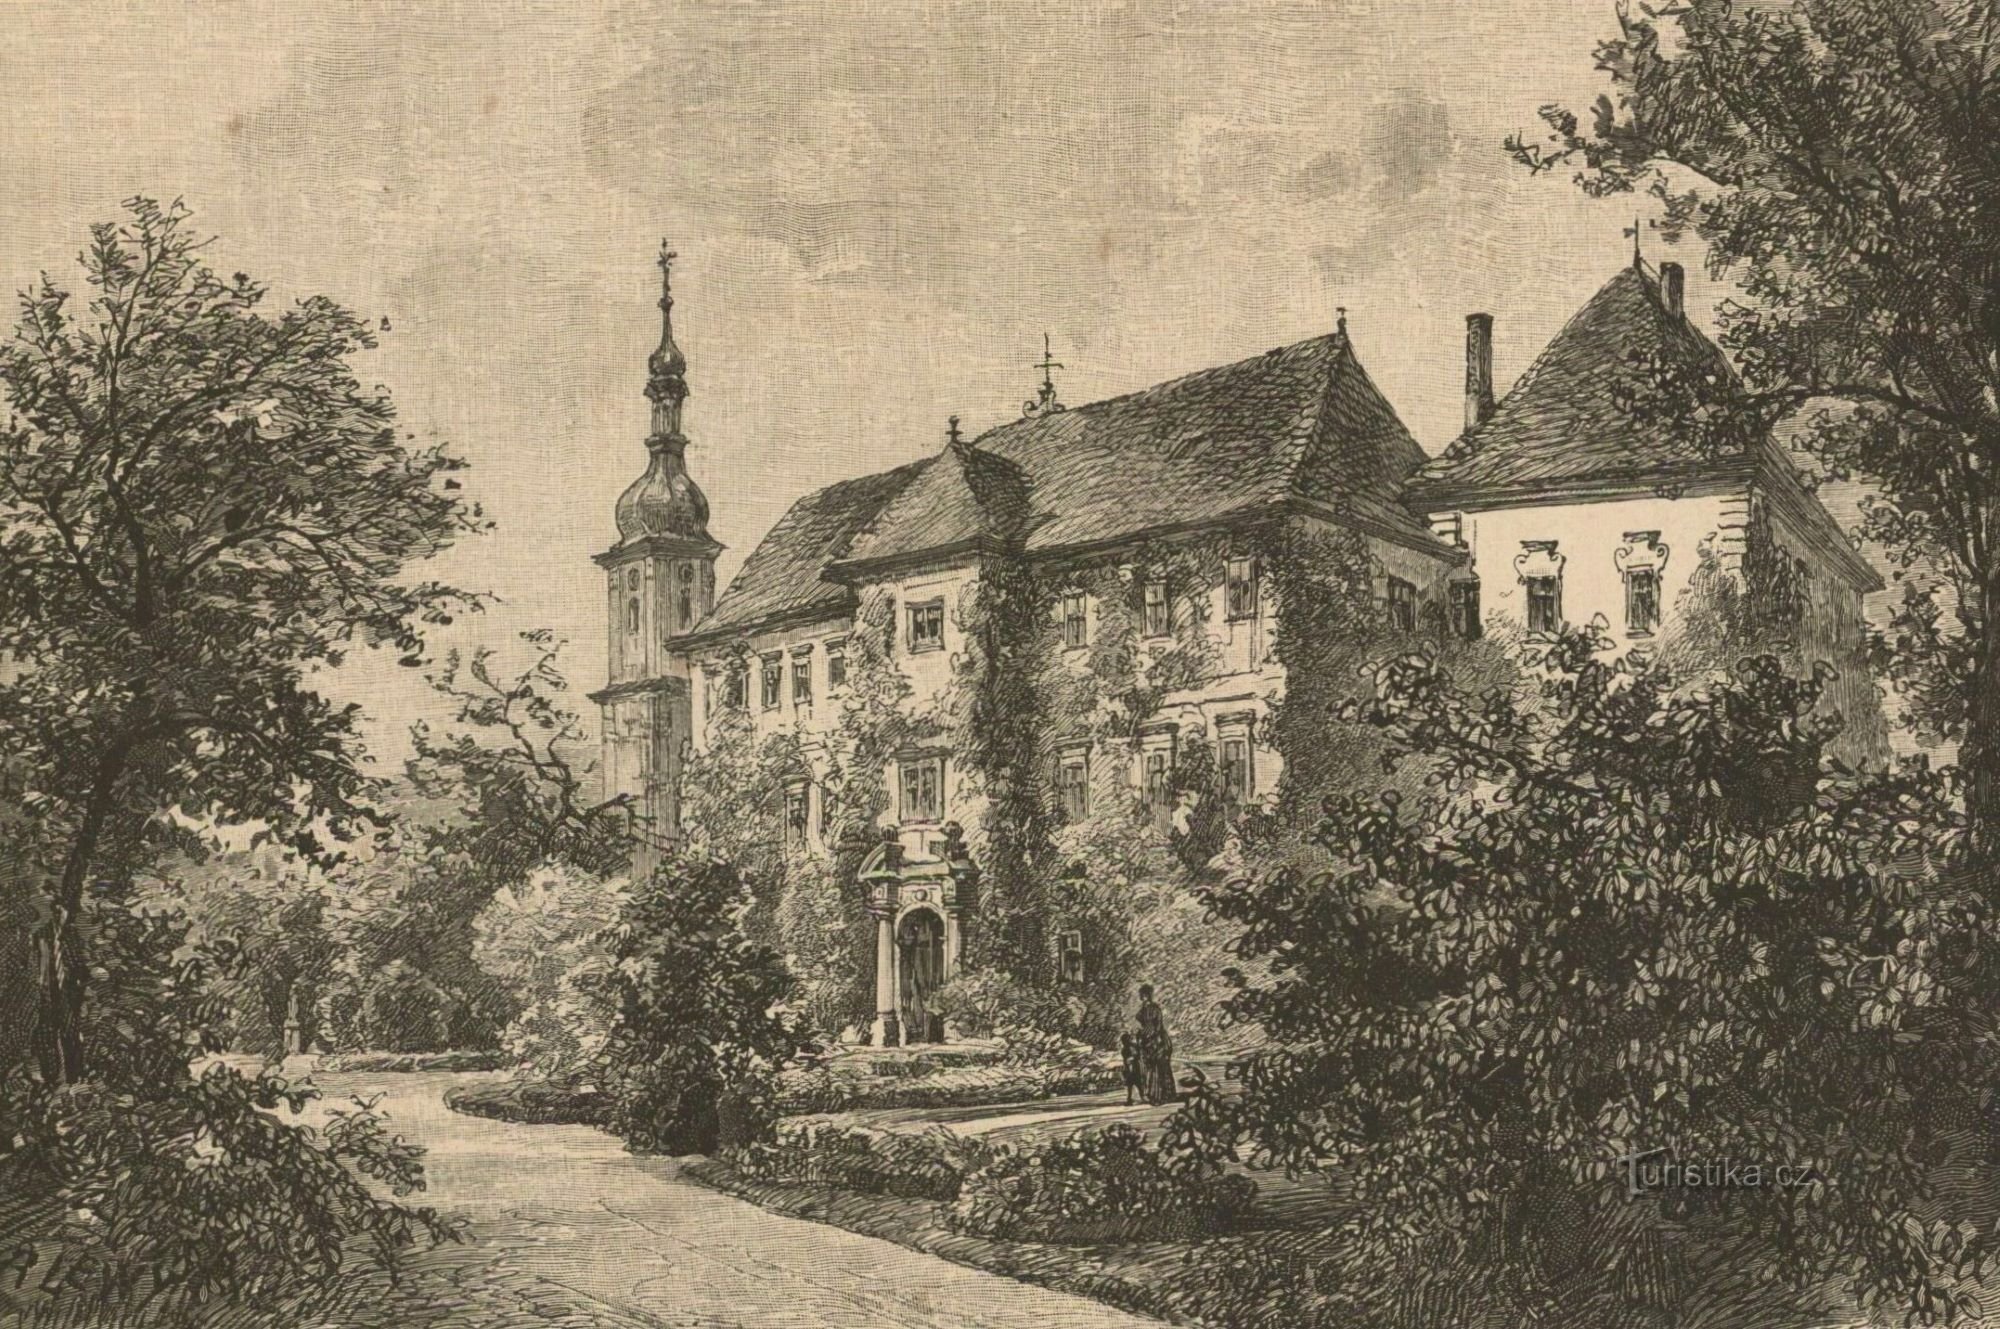 Le château de Smiřice dans la seconde moitié du XIXe siècle